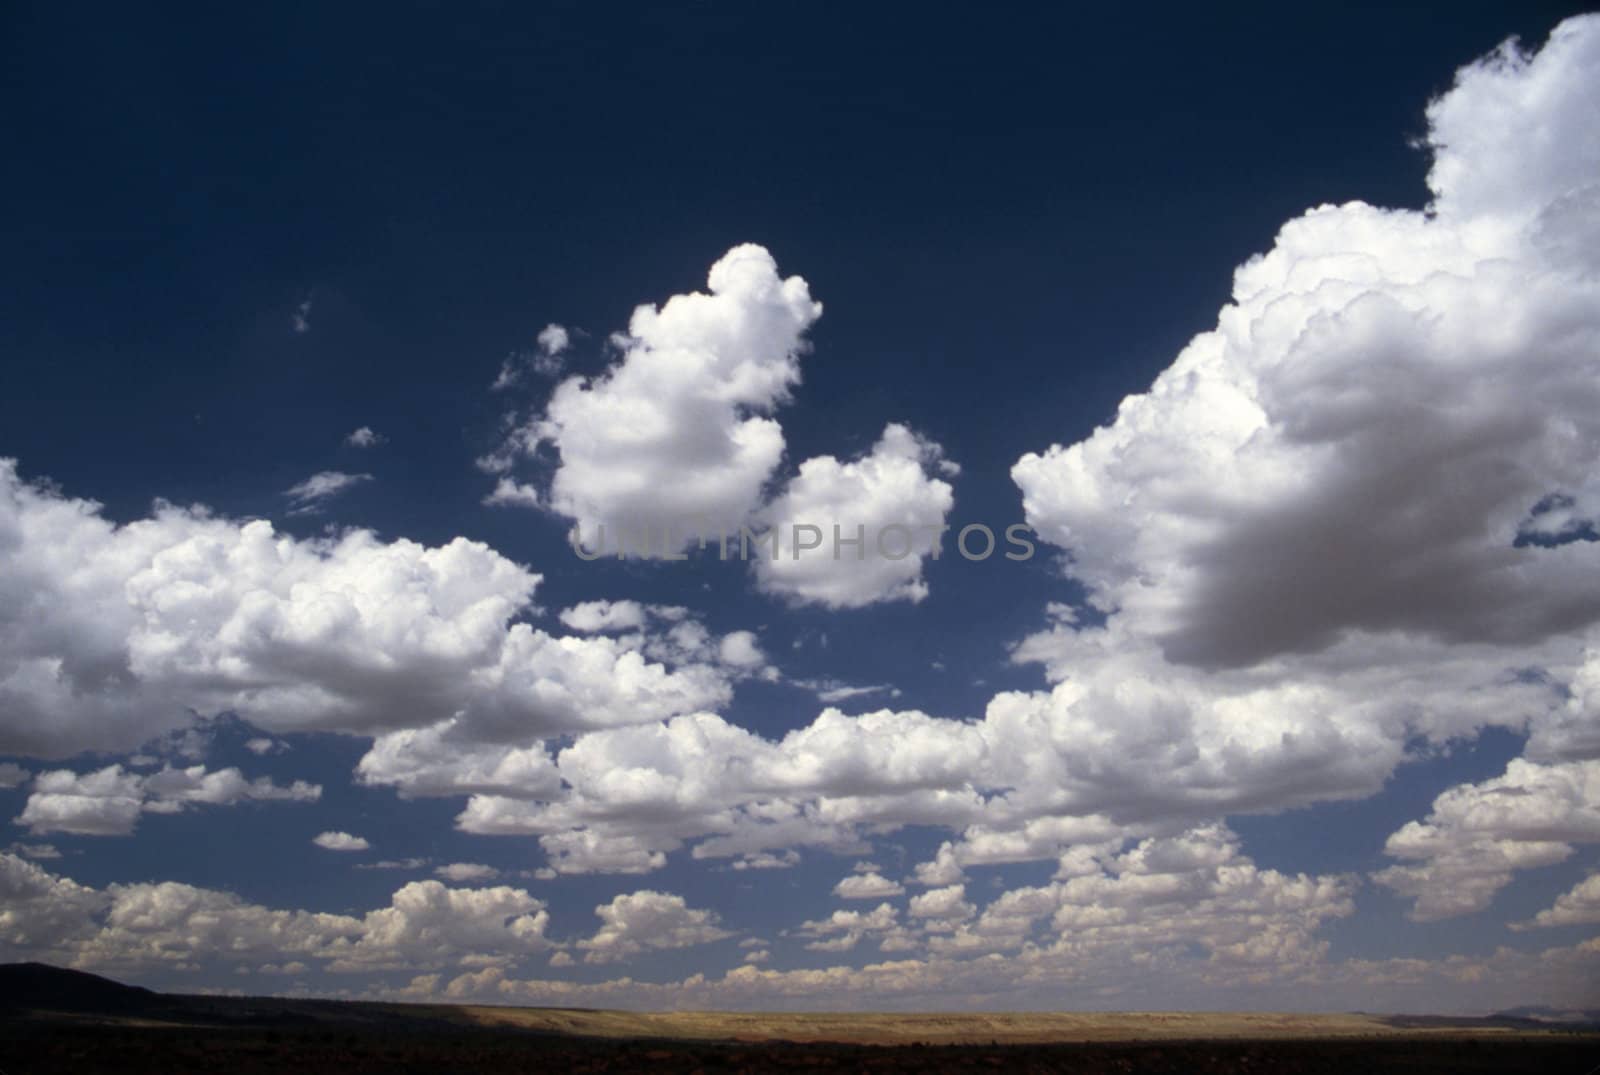 Clouds in Arizona